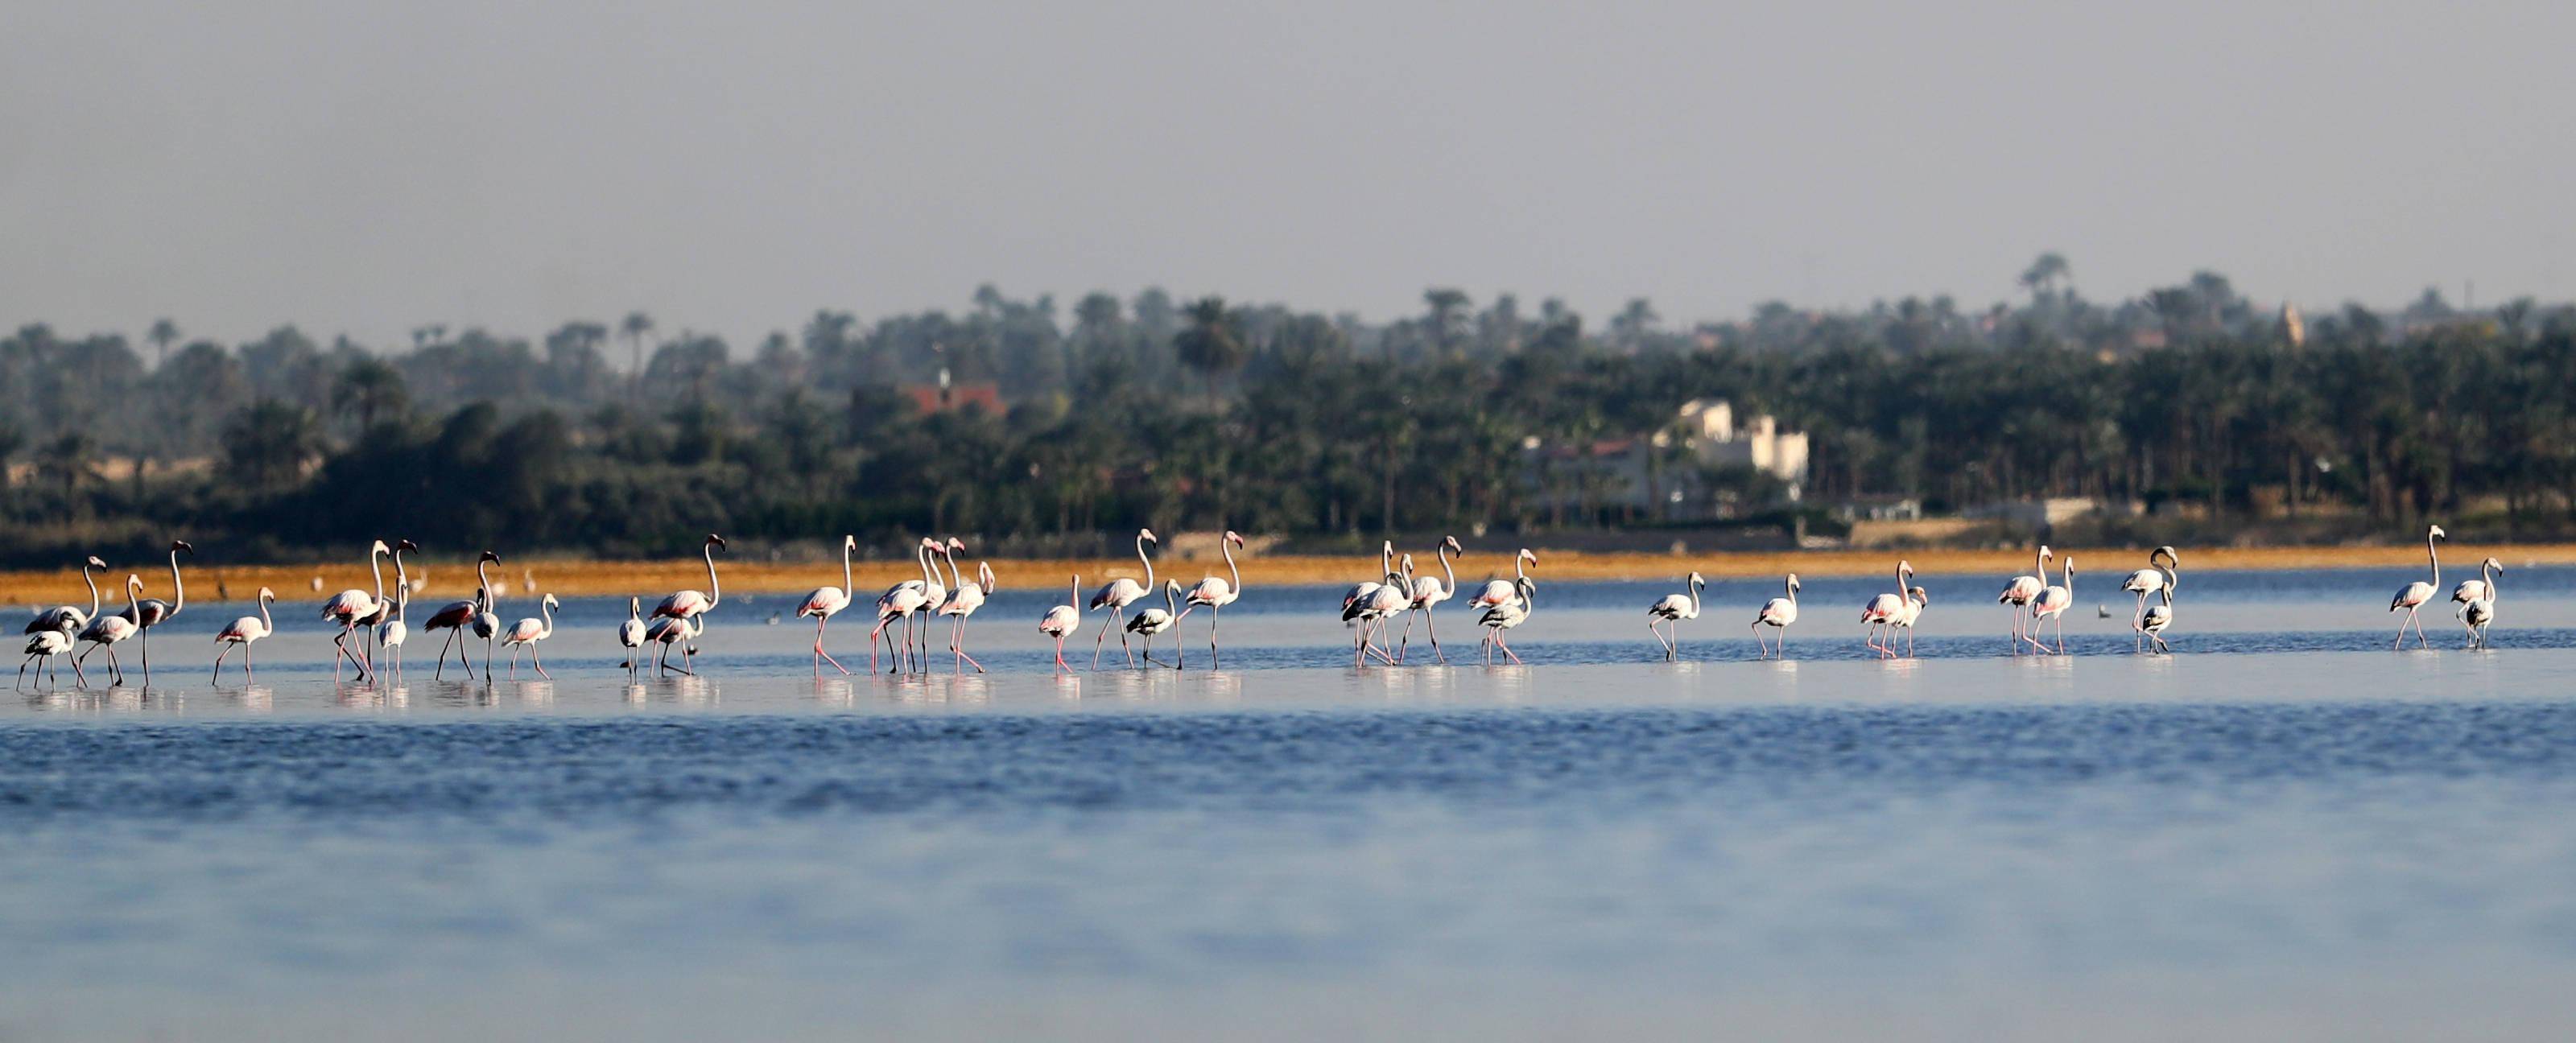 埃及法尤姆:火烈鸟漫步加龙湖